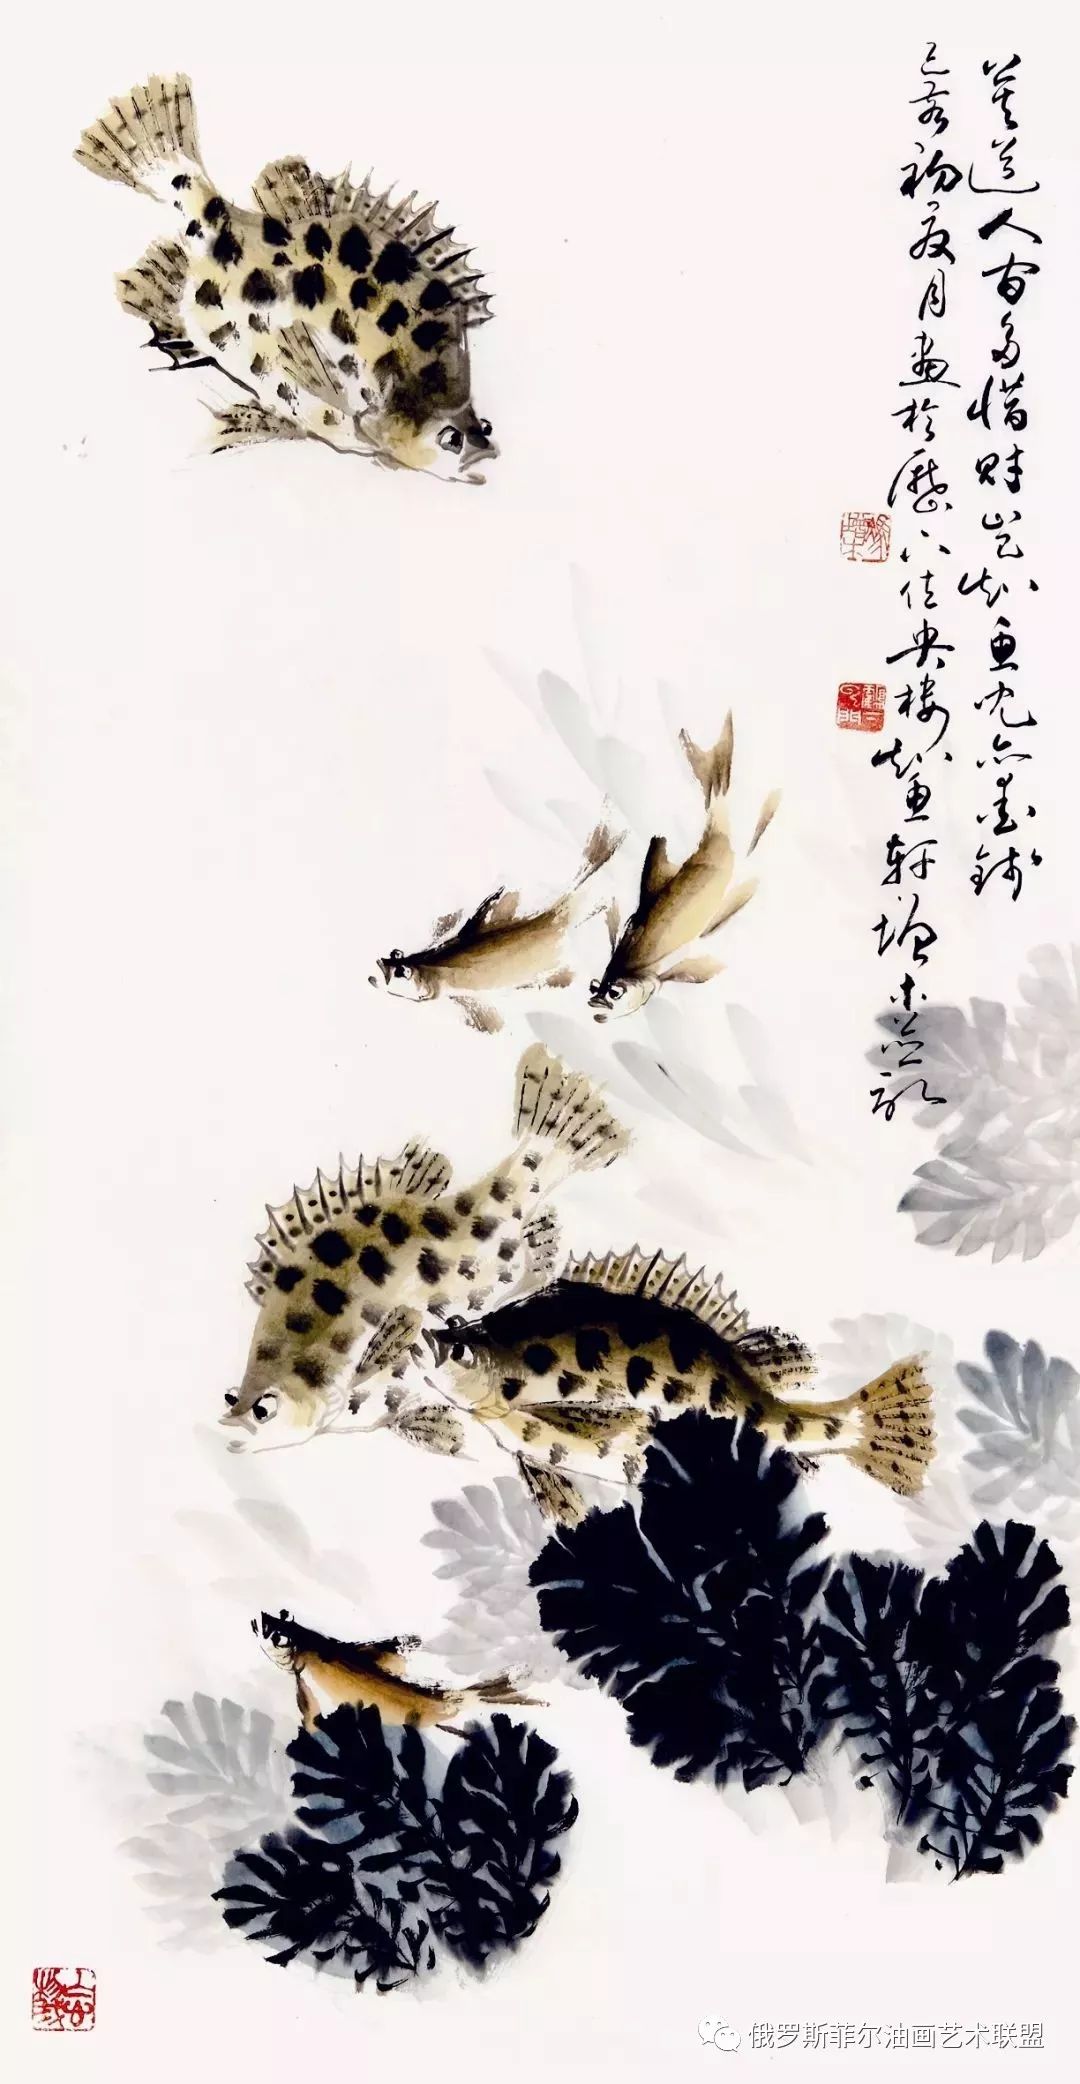 中国画鱼十大名家图片